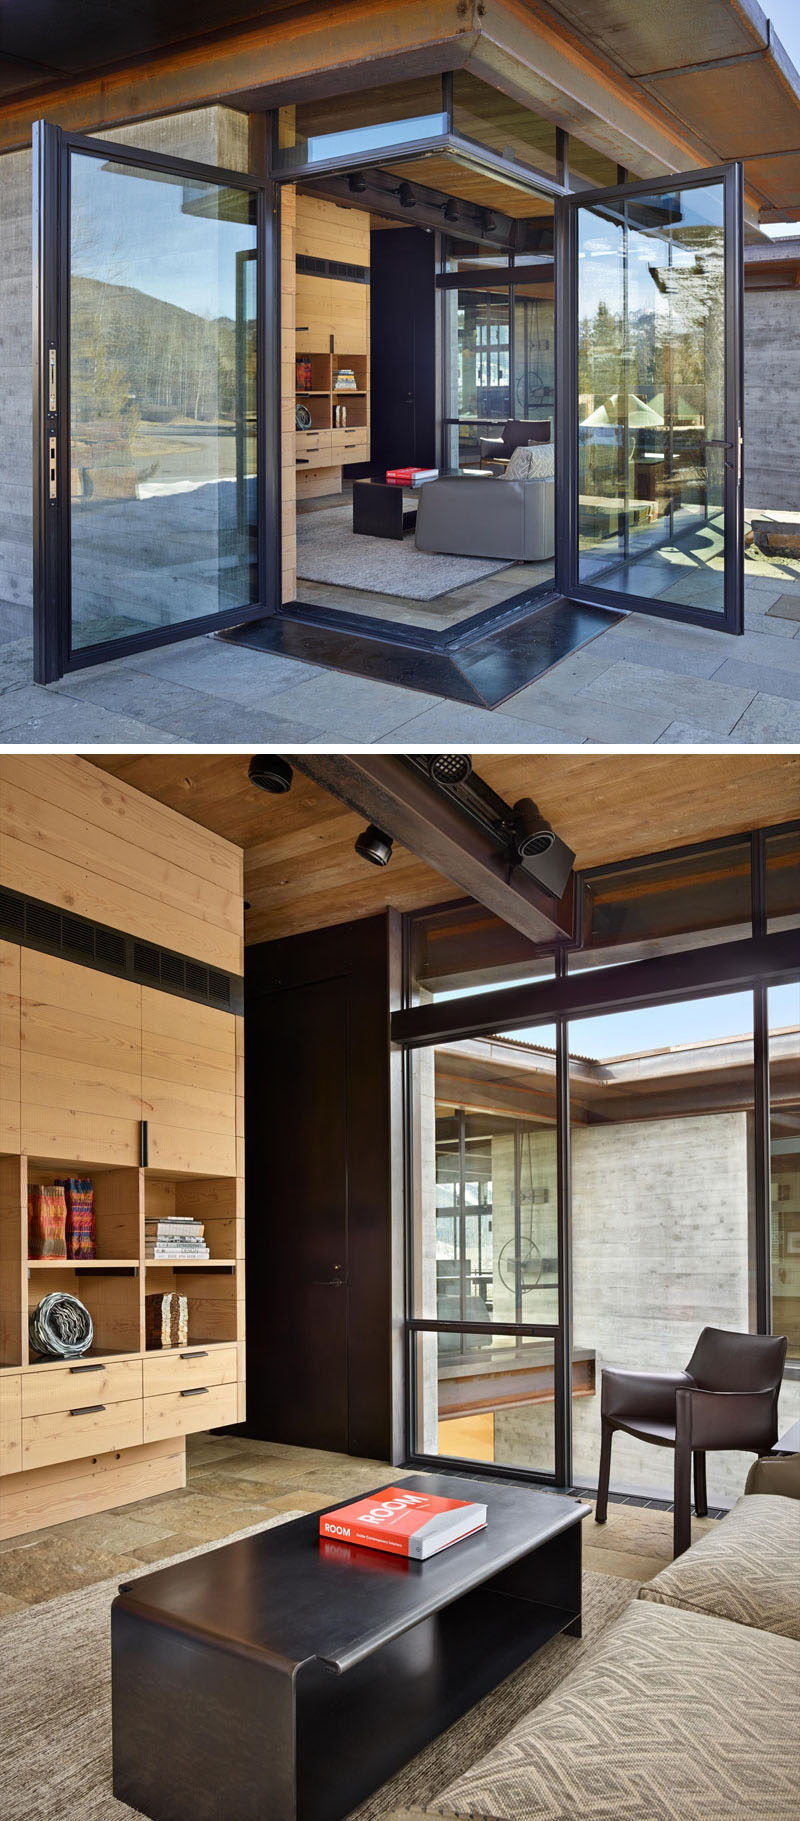 Угловые двери открывают небольшую гостиную (или домашний офис) на улицу. Черные дверные и оконные рамы сочетаются со стальным журнальным столиком и балками в доме.